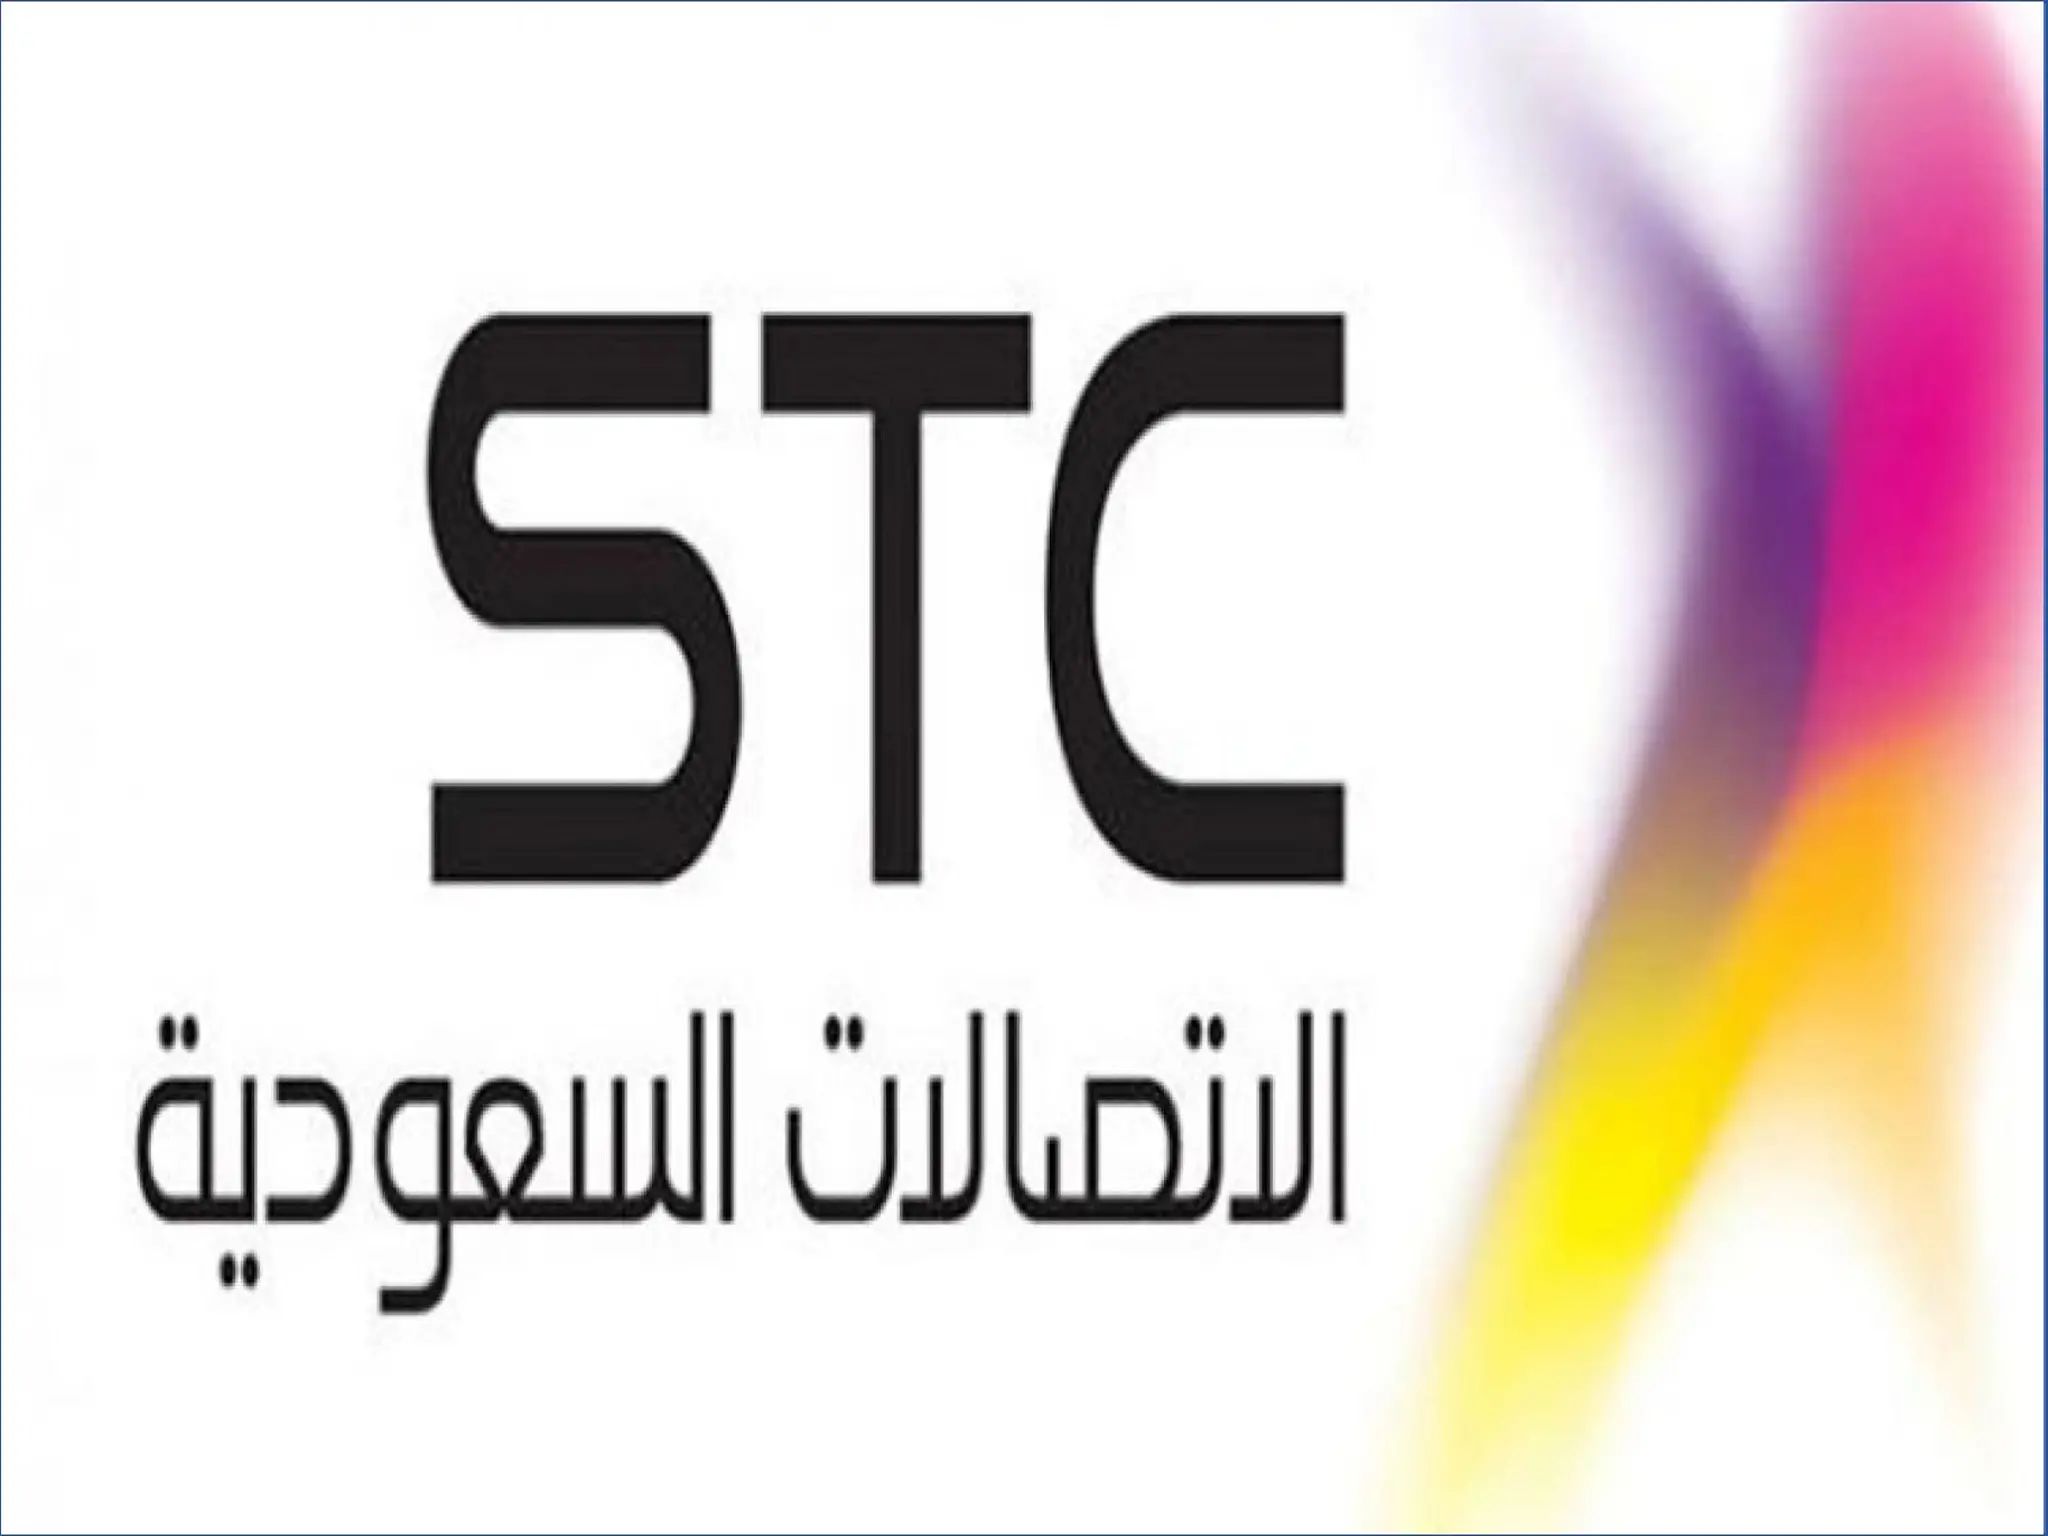  التقديم على وظائف من الاتصالات السعودية STC والشروط المطلوبة 